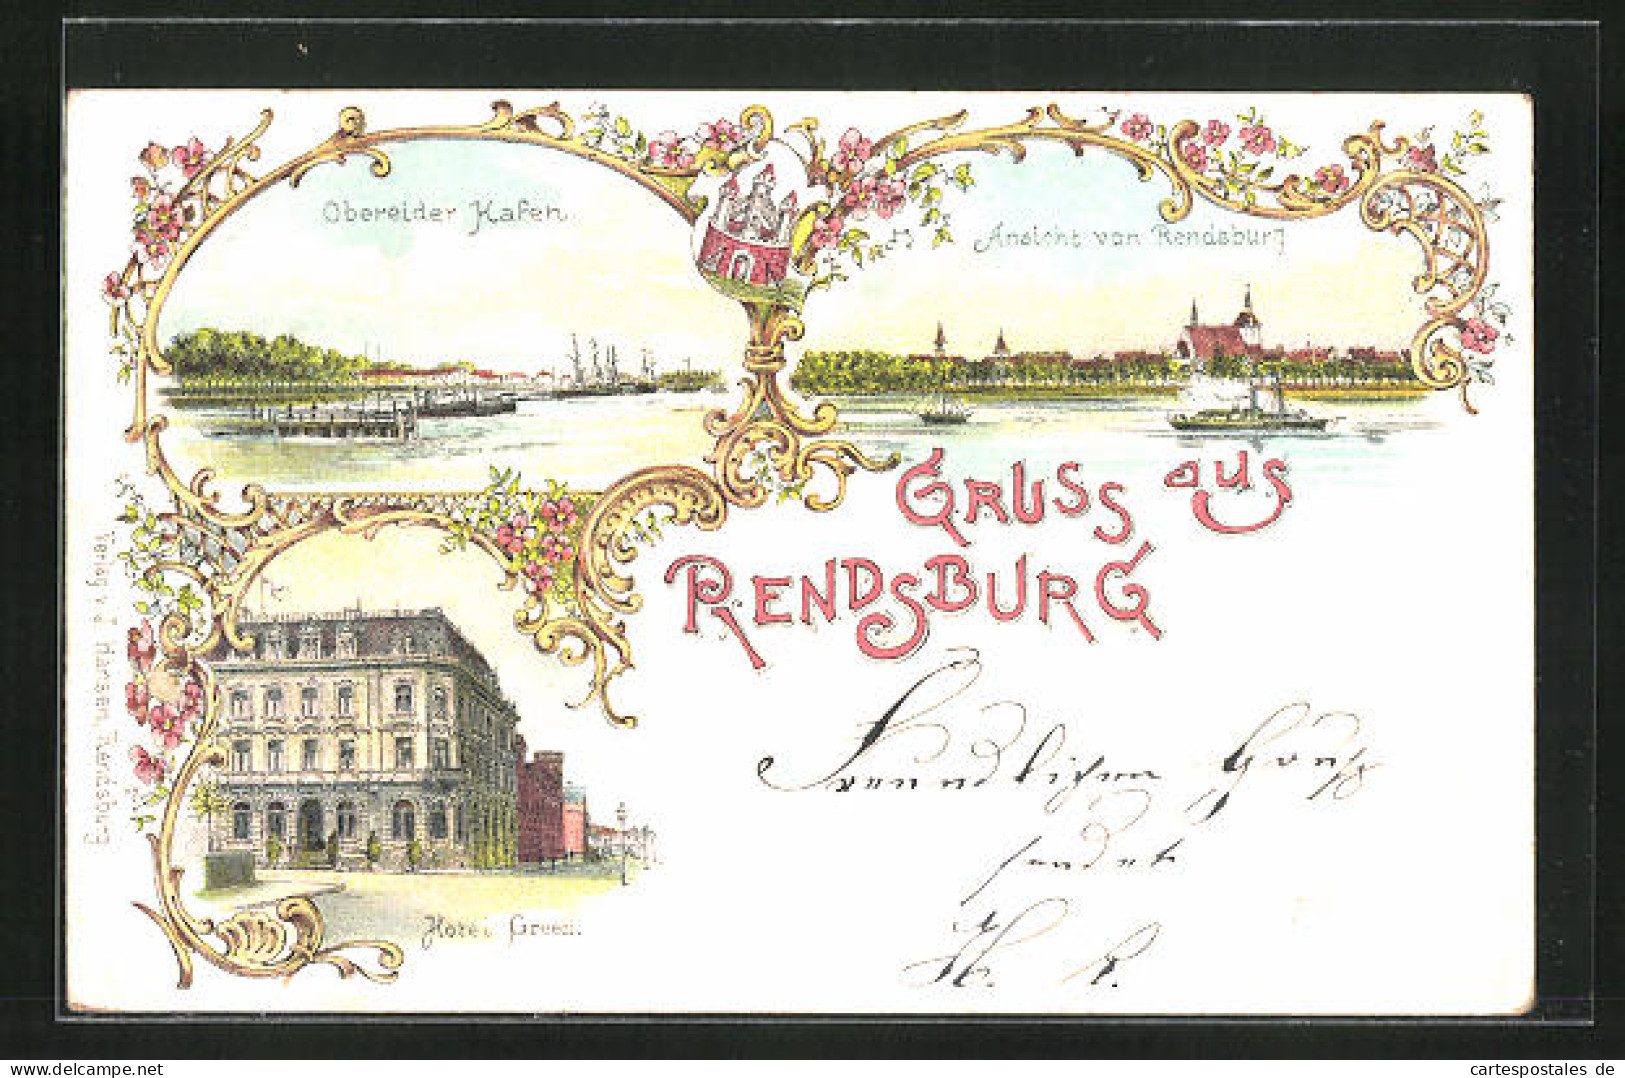 Lithographie Rendsburg, Hotel Green, Obereider Hafen  - Rendsburg